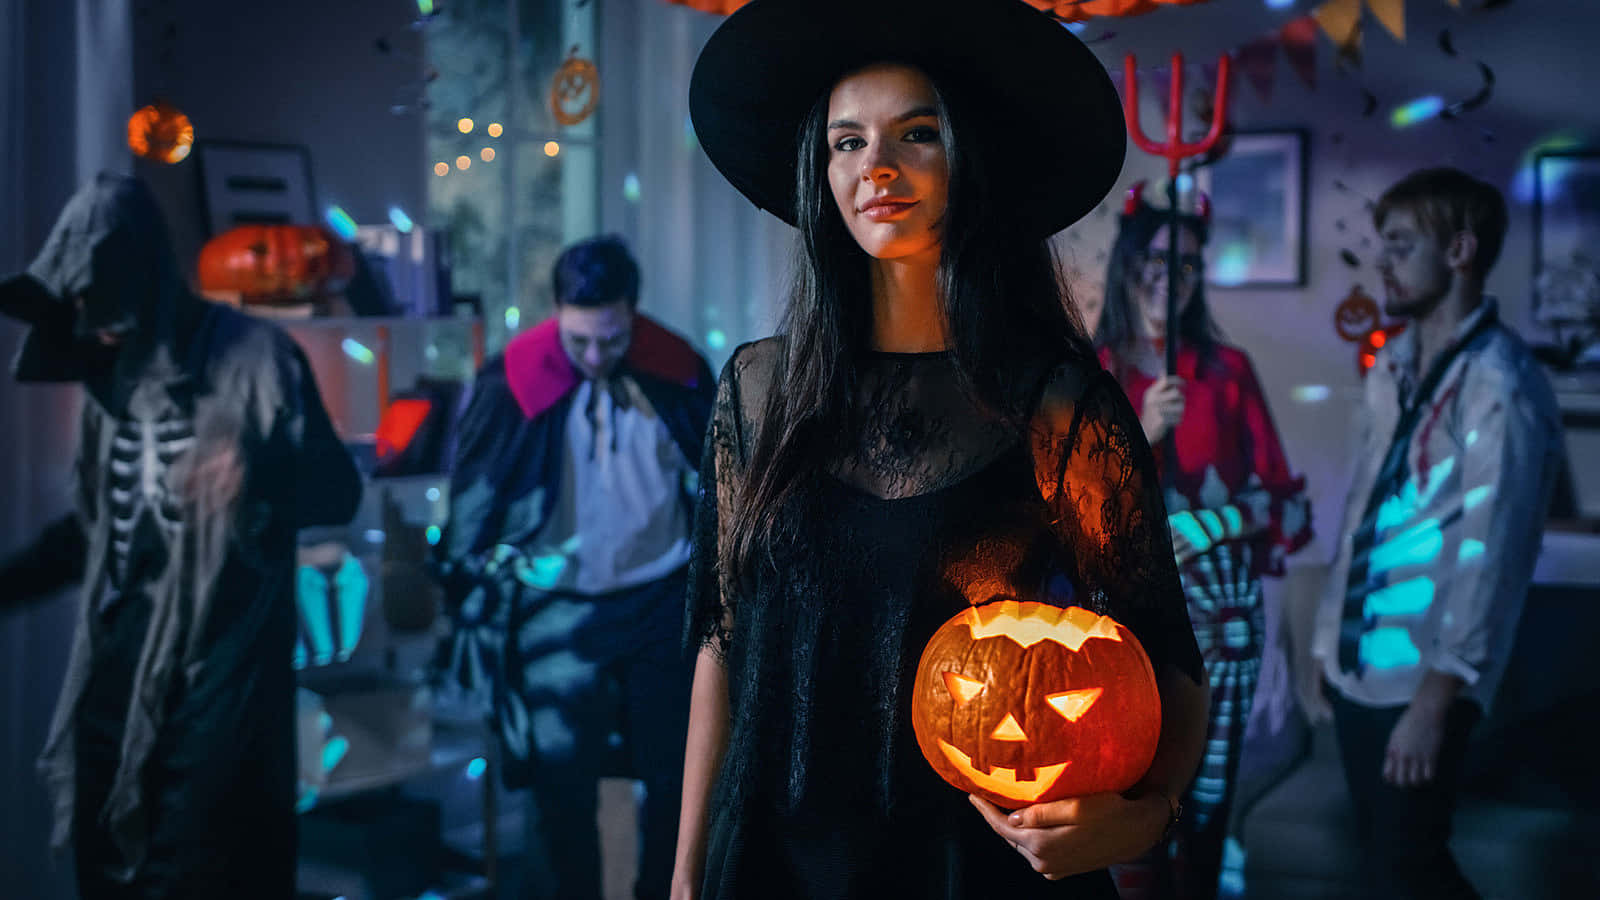 Enkvinna I En Halloween-dräkt Som Håller En Pumpa